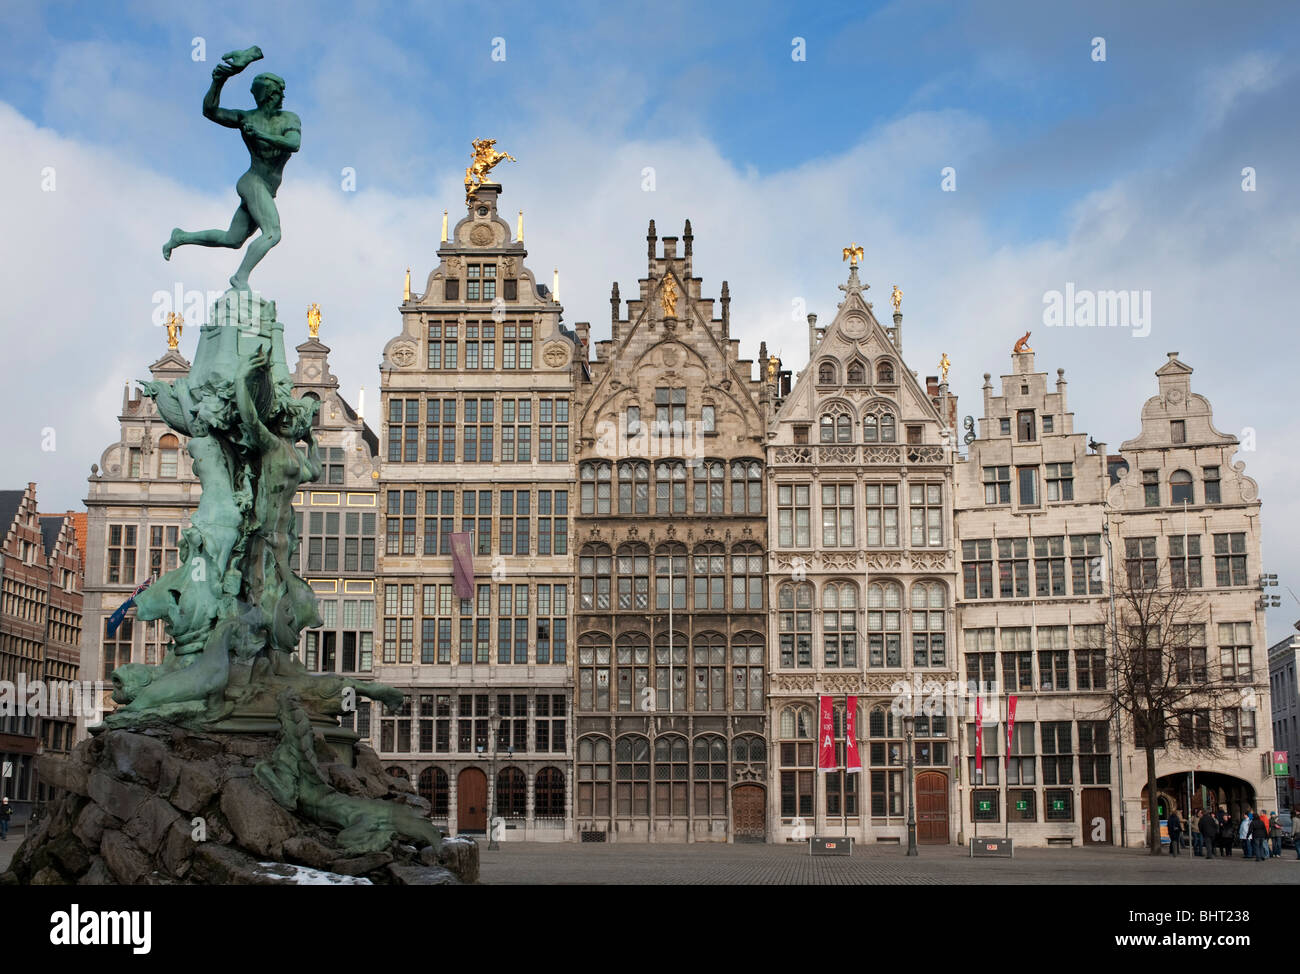 Brabo Anvers ; Fontaine et bâtiments historiques dans le Grote Markt d'Anvers Belgique Banque D'Images